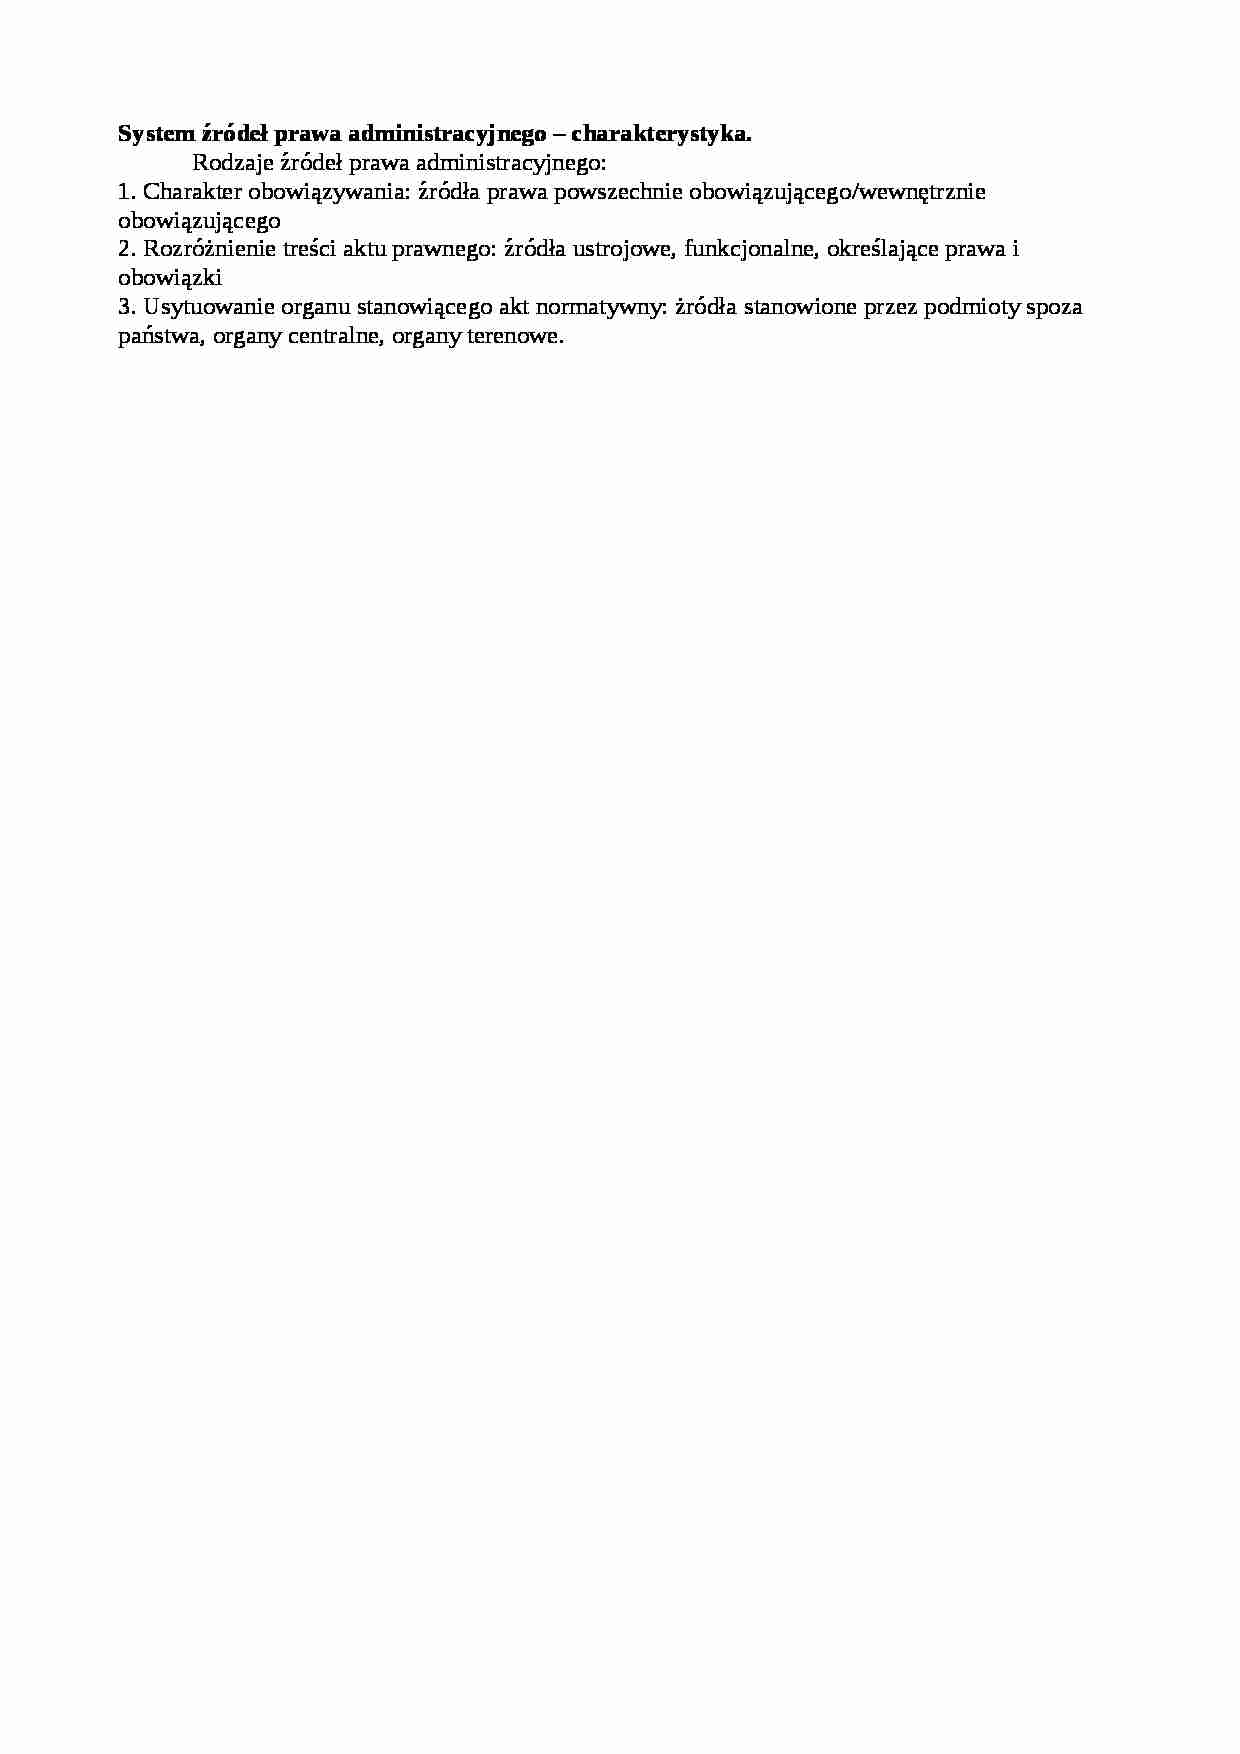 System źródeł prawa administracyjnego - charakterystyka - wykład - strona 1